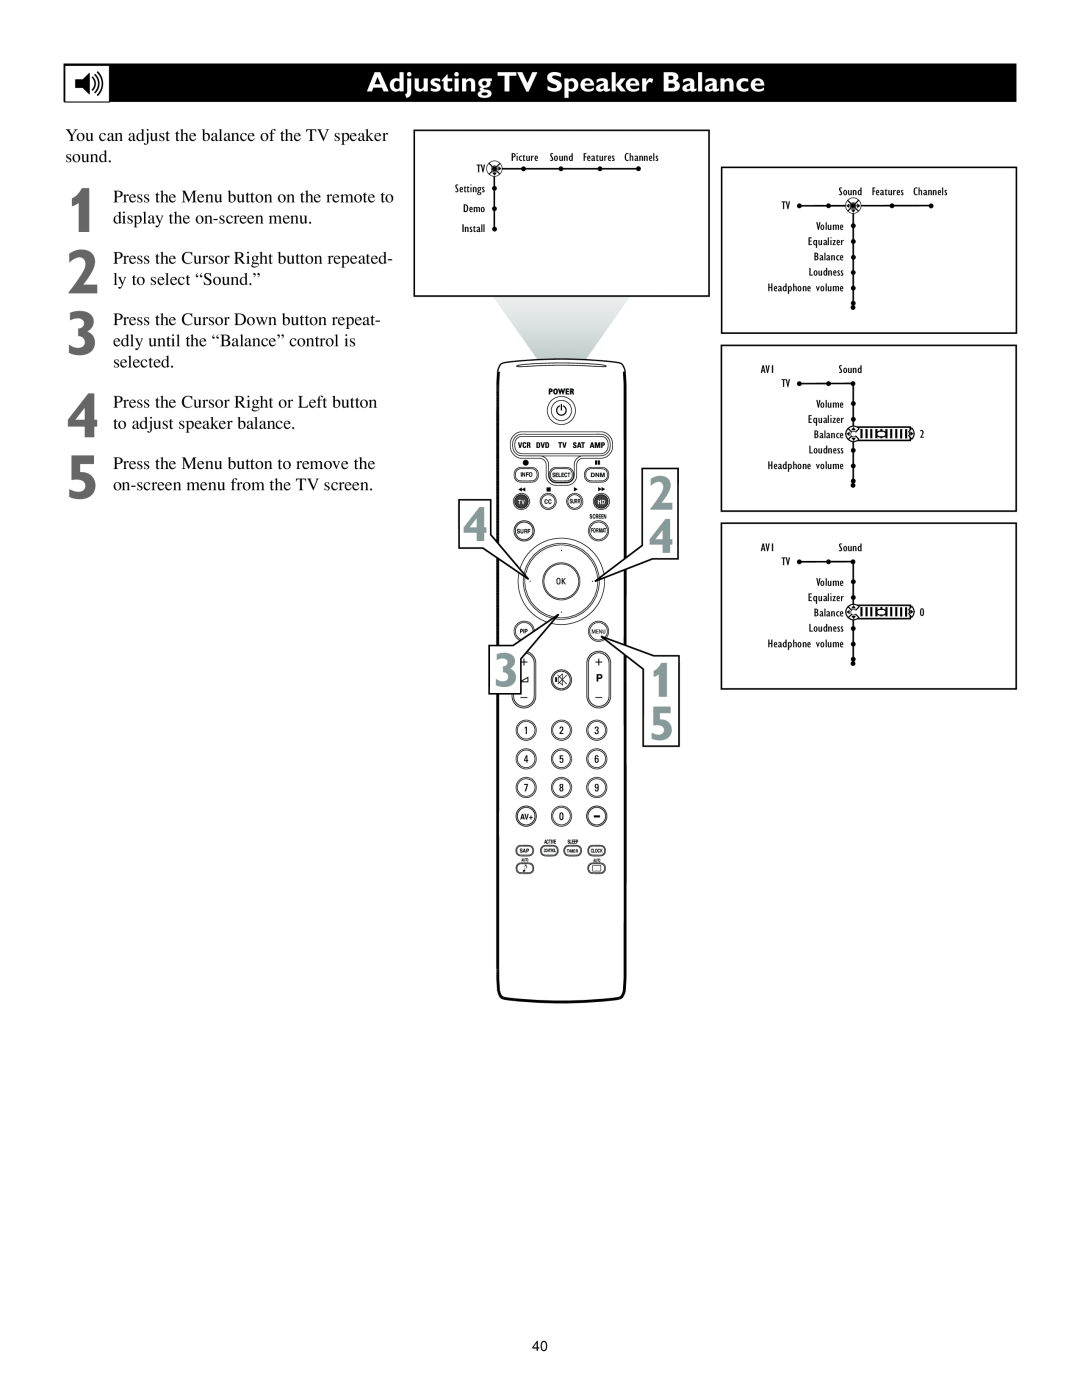 Philips 62PL9524, 55PL9524 setup guide Adjusting TV Speaker Balance, 3 P 1 